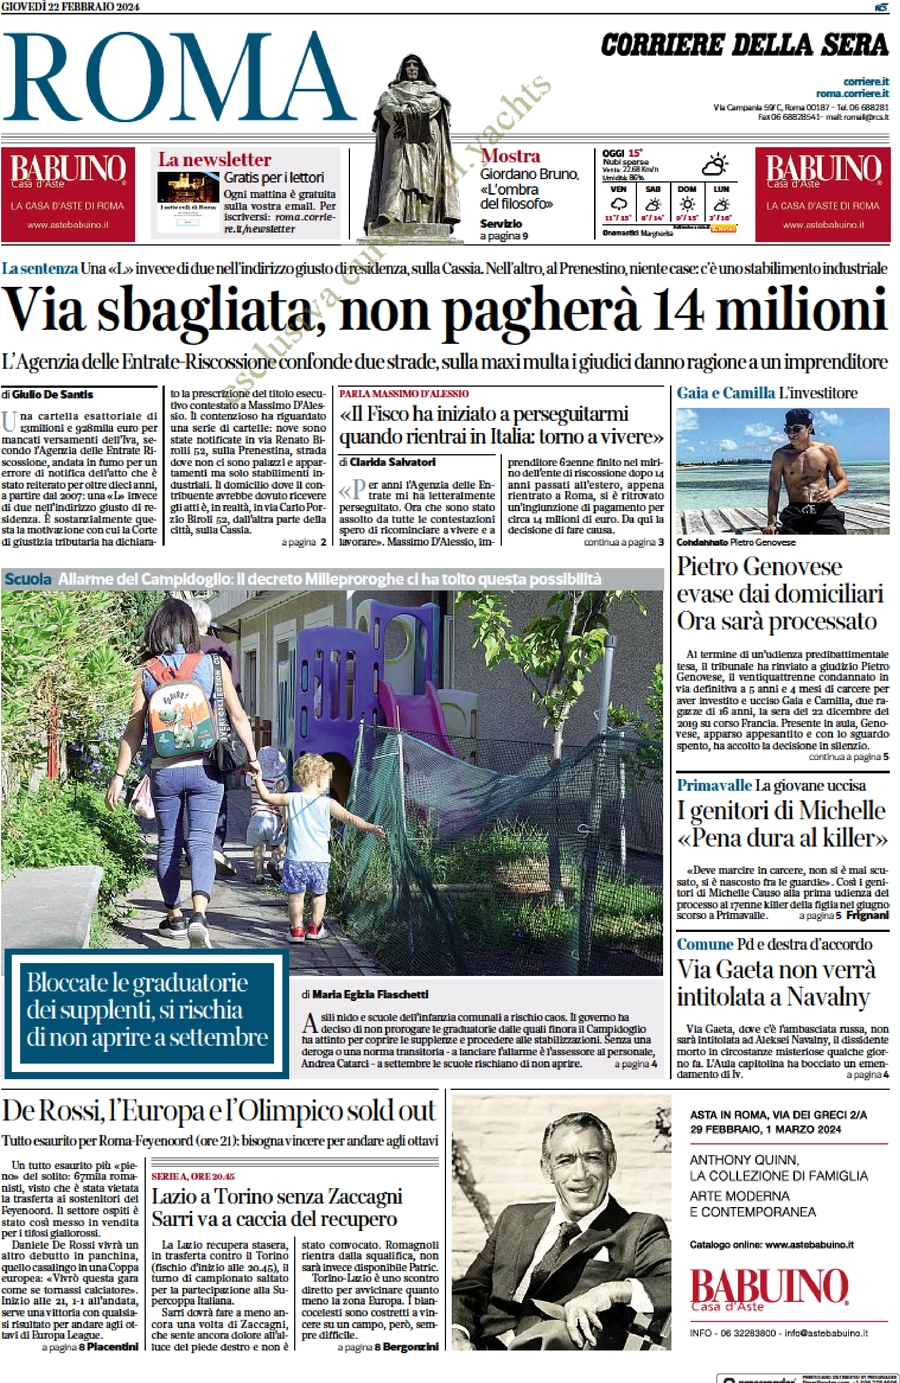 anteprima della prima pagina di corriere-della-sera-roma del 22/02/2024